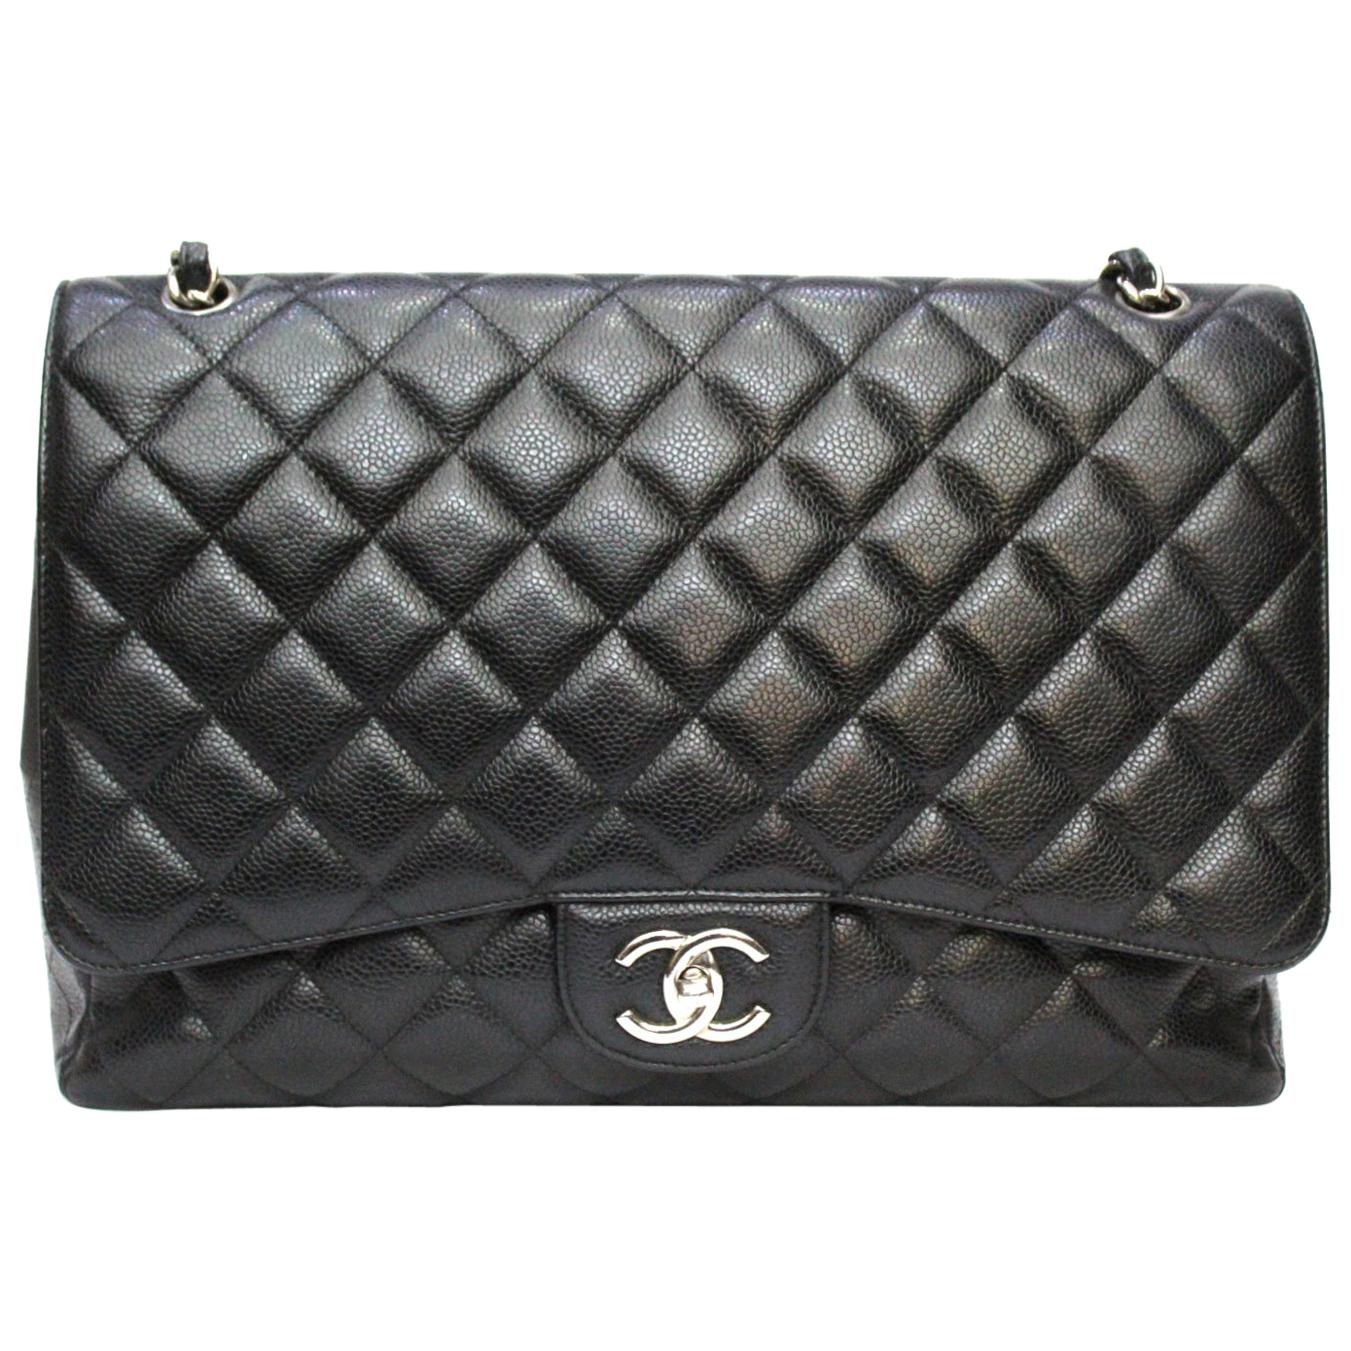 Chanel Black Leather Maxi Jumbo Double-Flap Bag